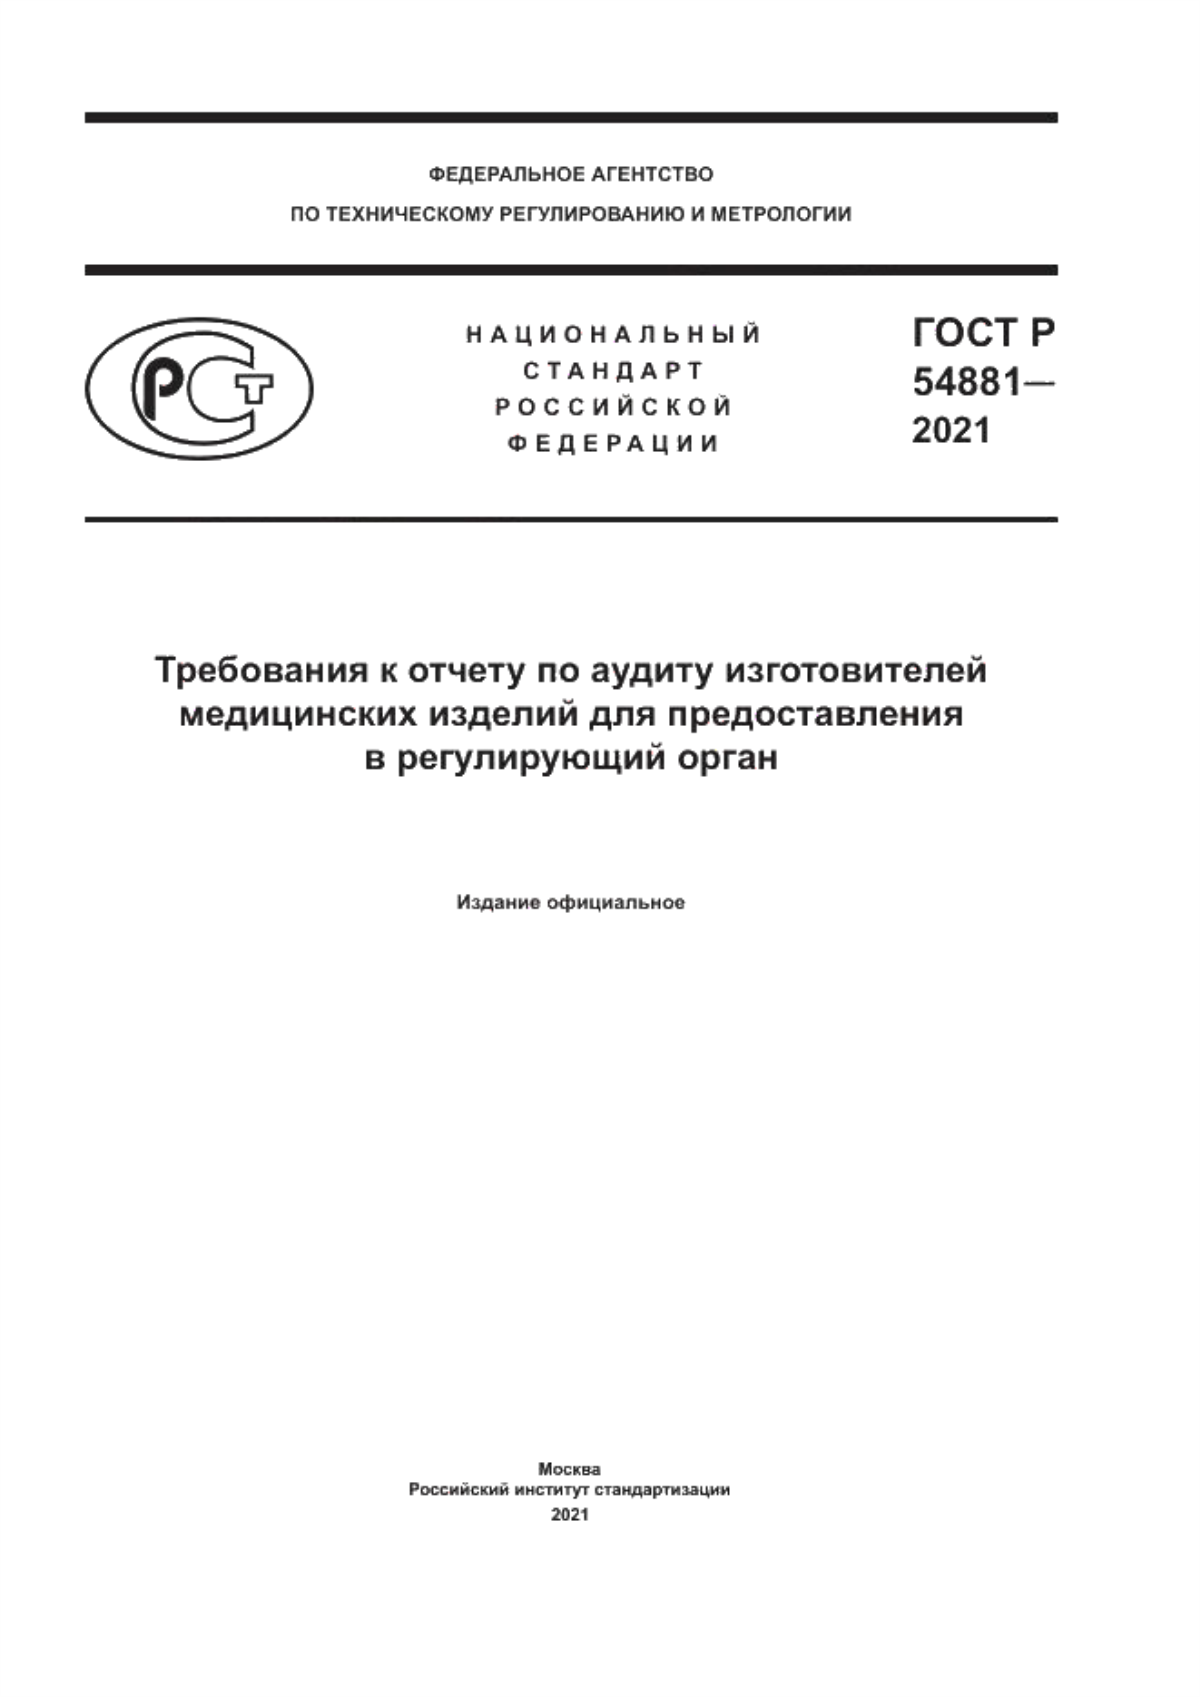 ГОСТ Р 54881-2021 Требования к отчету по аудиту изготовителей медицинских изделий для предоставления в регулирующий орган